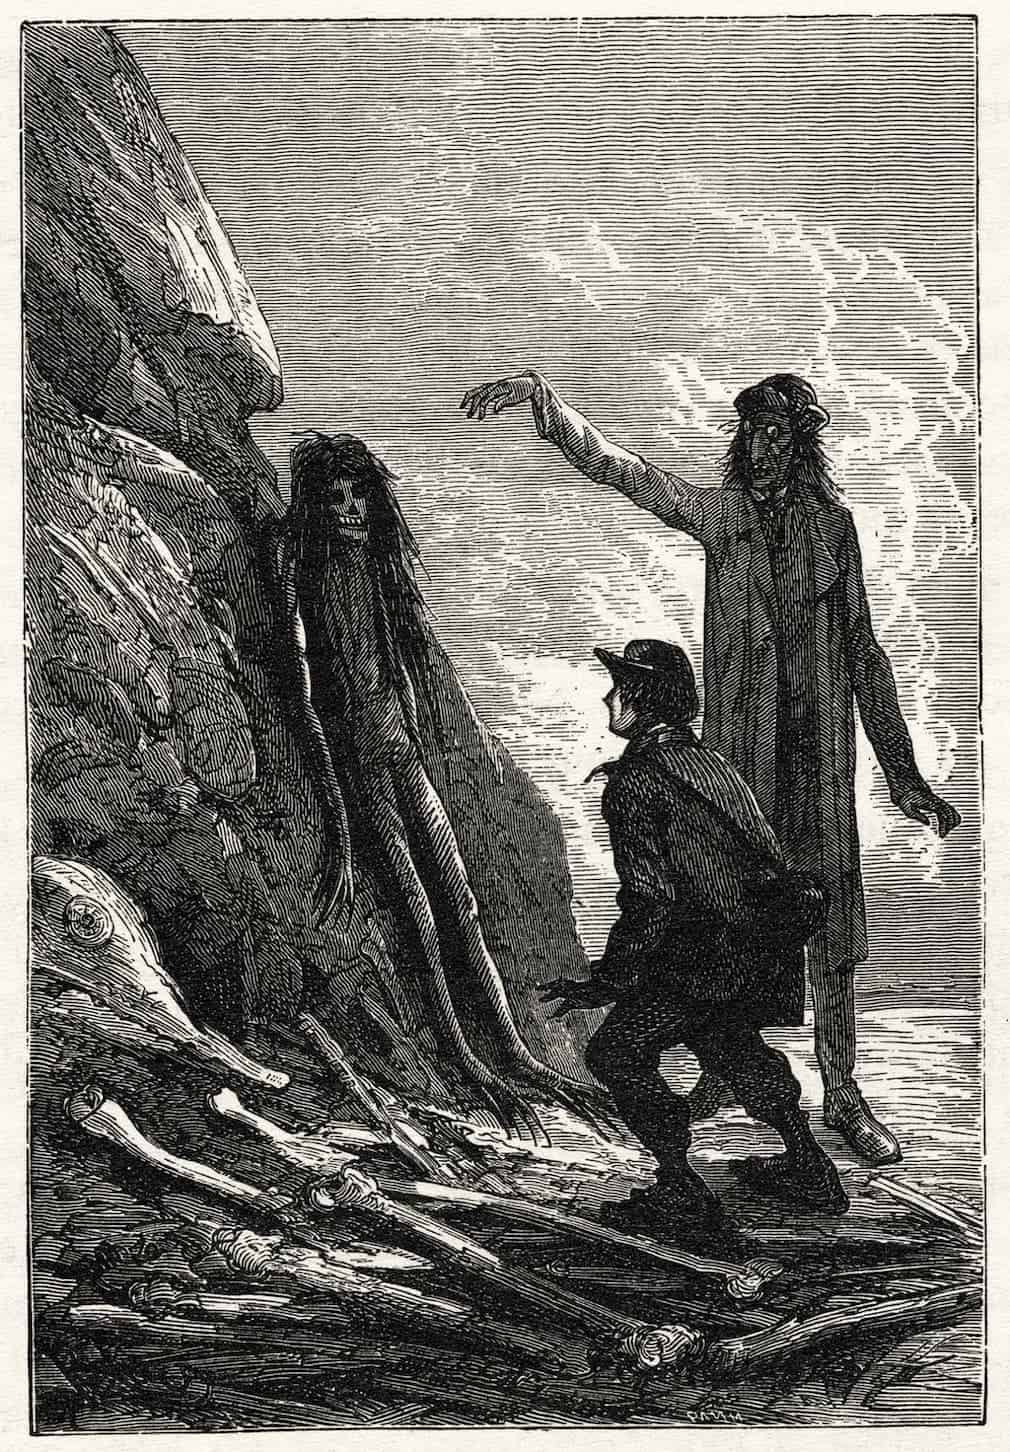 Une illustration en noir et blanc d'un homme désignant un corps humain parfaitement reconnaissable sur un rocher, dans Voyage au Centre de la Terre de Jules Verne